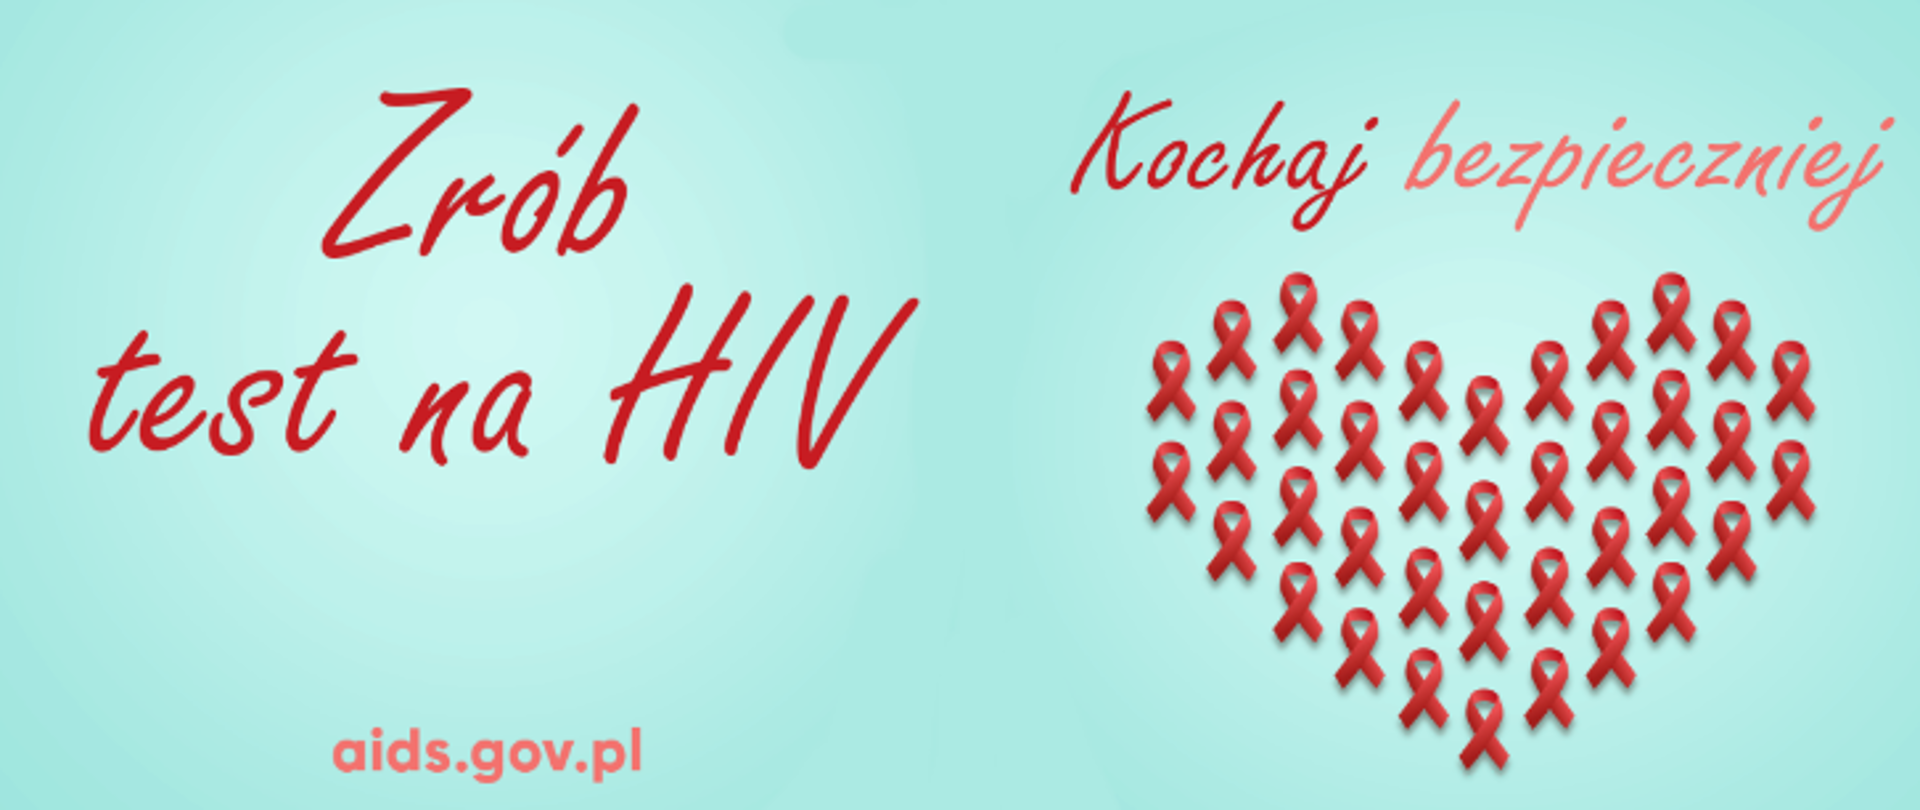 Baner z napisami Zrób test na HIV i Kochaj bezpiecznie